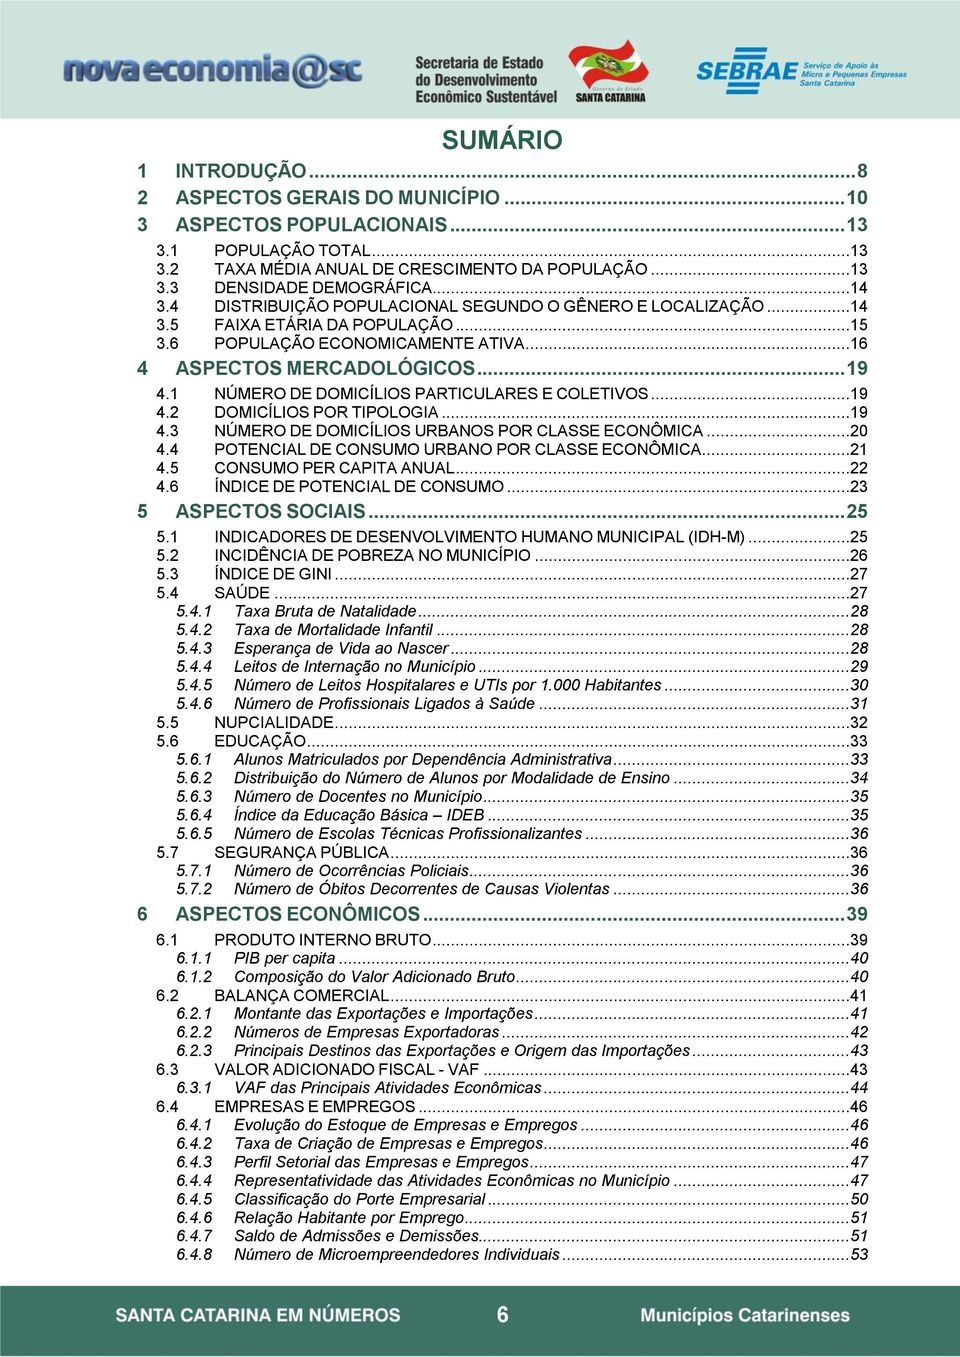 1 NÚMERO DE DOMICÍLIOS PARTICULARES E COLETIVOS...19 4.2 DOMICÍLIOS POR TIPOLOGIA...19 4.3 NÚMERO DE DOMICÍLIOS URBANOS POR CLASSE ECONÔMICA...20 4.4 POTENCIAL DE CONSUMO URBANO POR CLASSE ECONÔMICA.